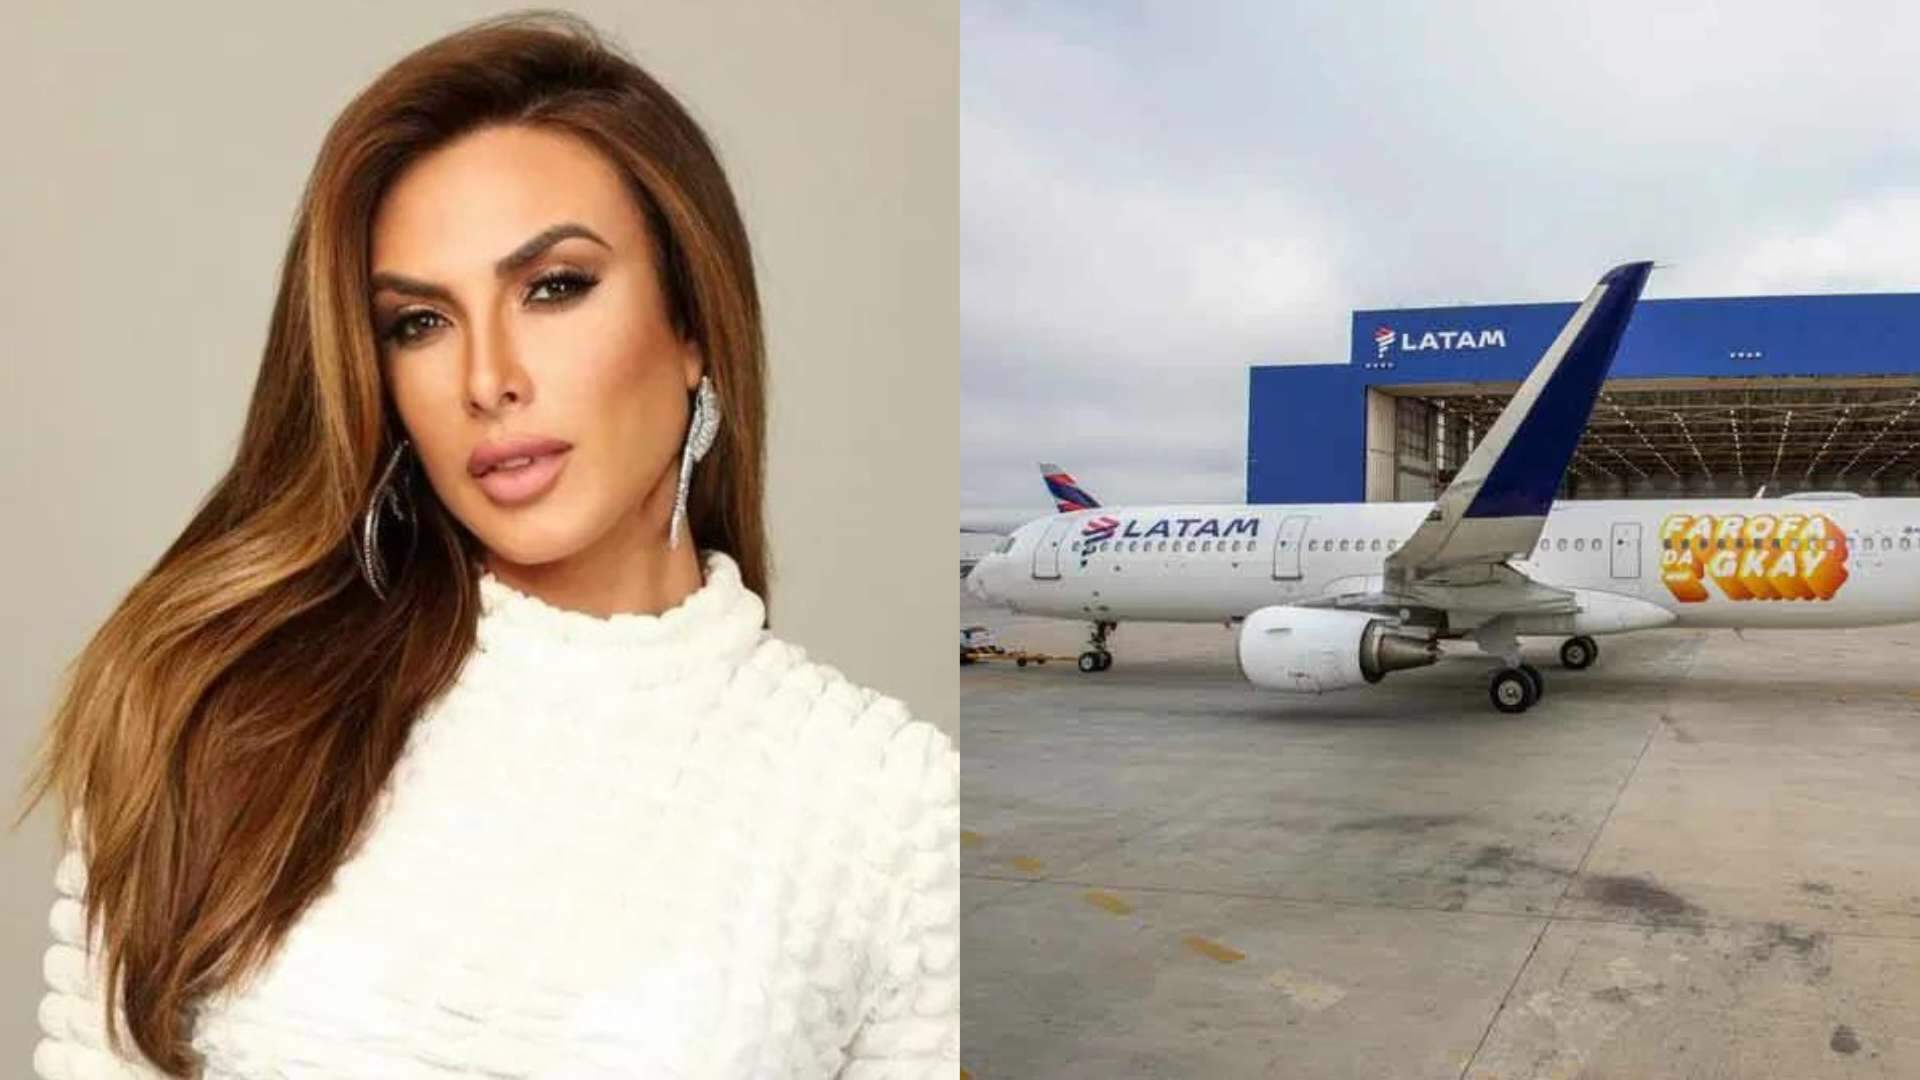 Desistiu? Vidente prevê queda do avião da Farofa da Gkay e Nicole Bahls toma atitude inusitada - Metropolitana FM